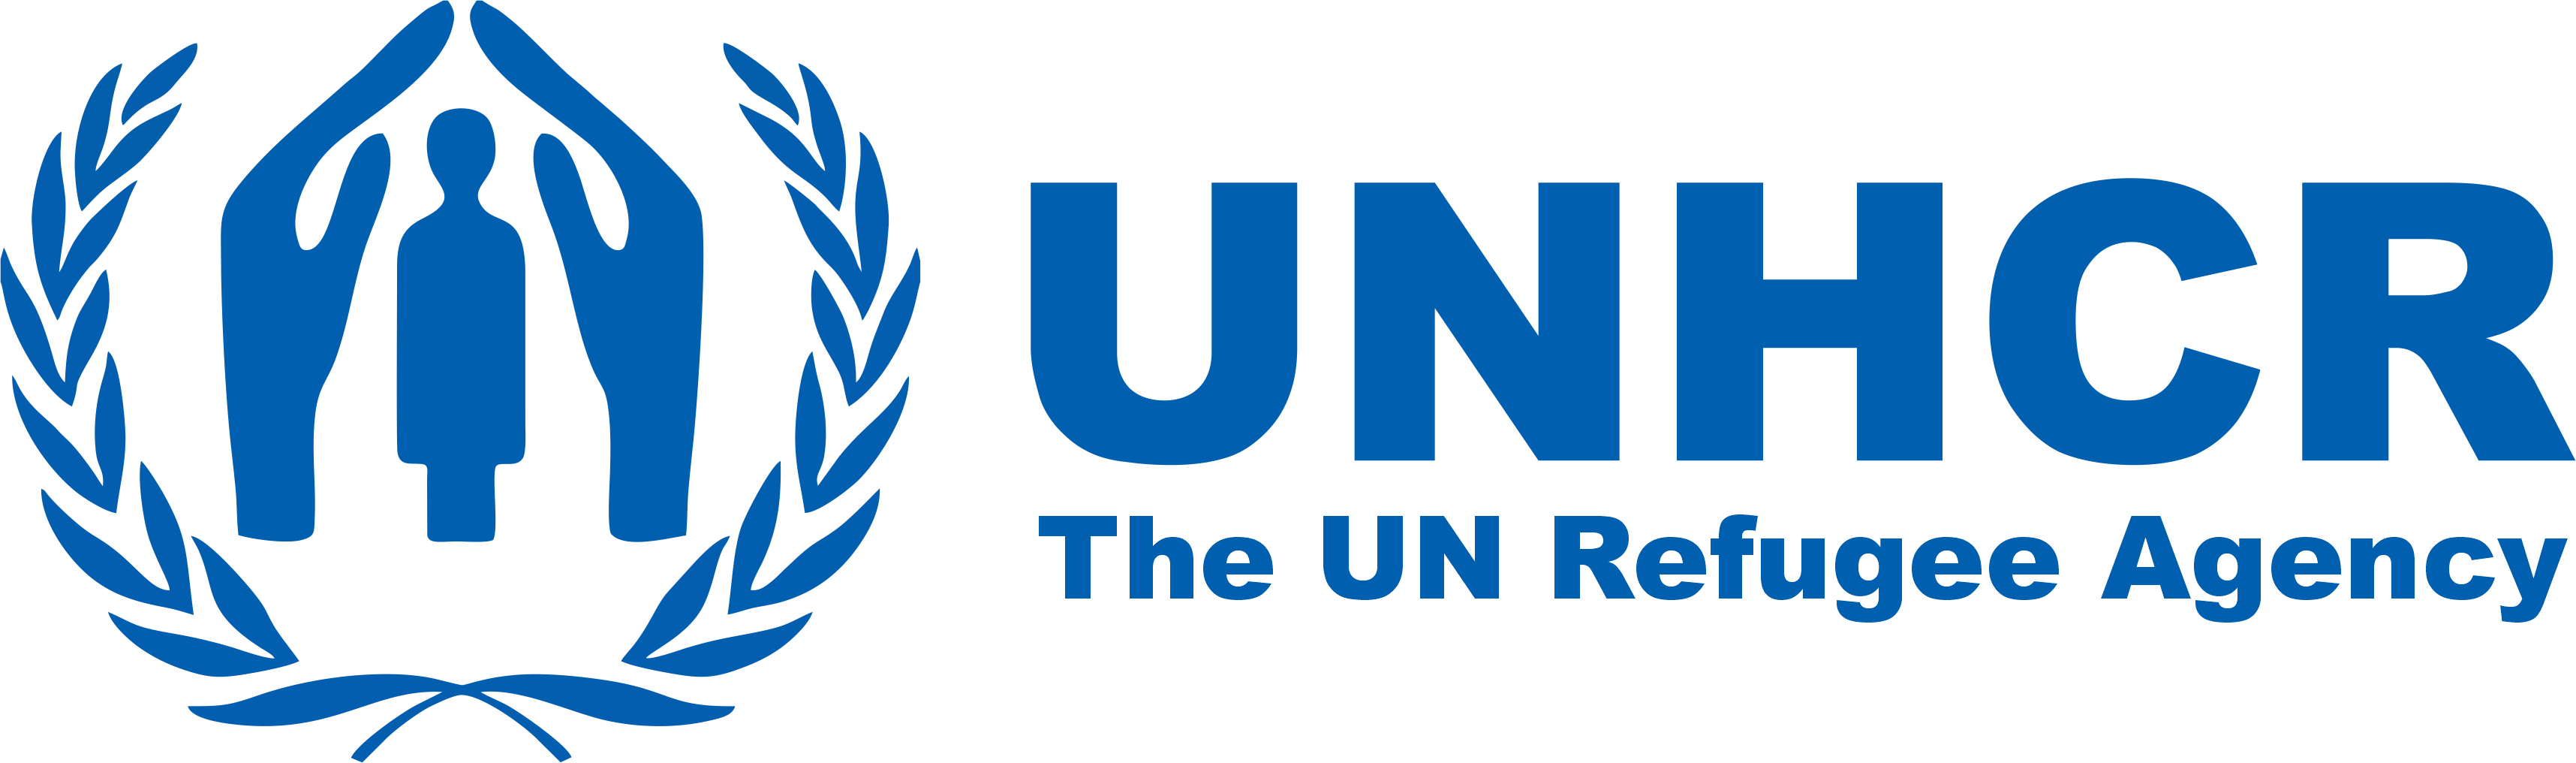 UNHCR- The UN Refugee Agency